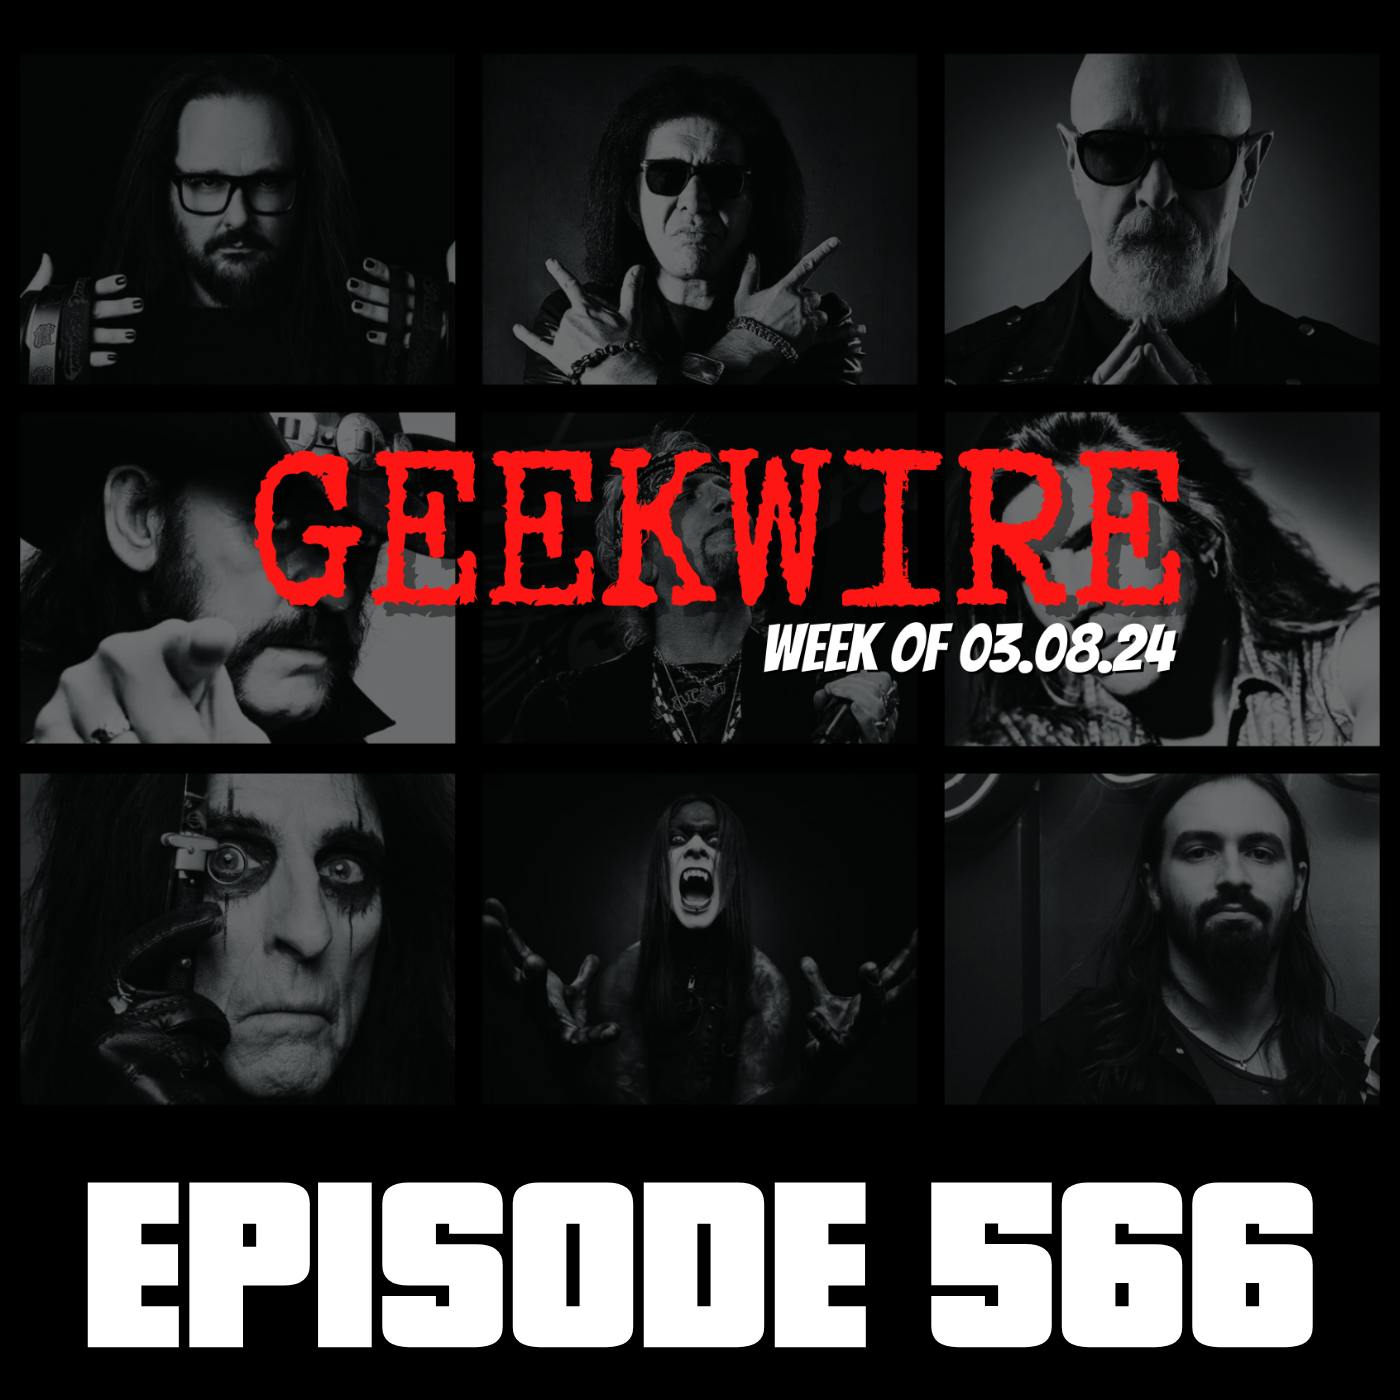 Geekwire Week of 03.08.24 - Ep566